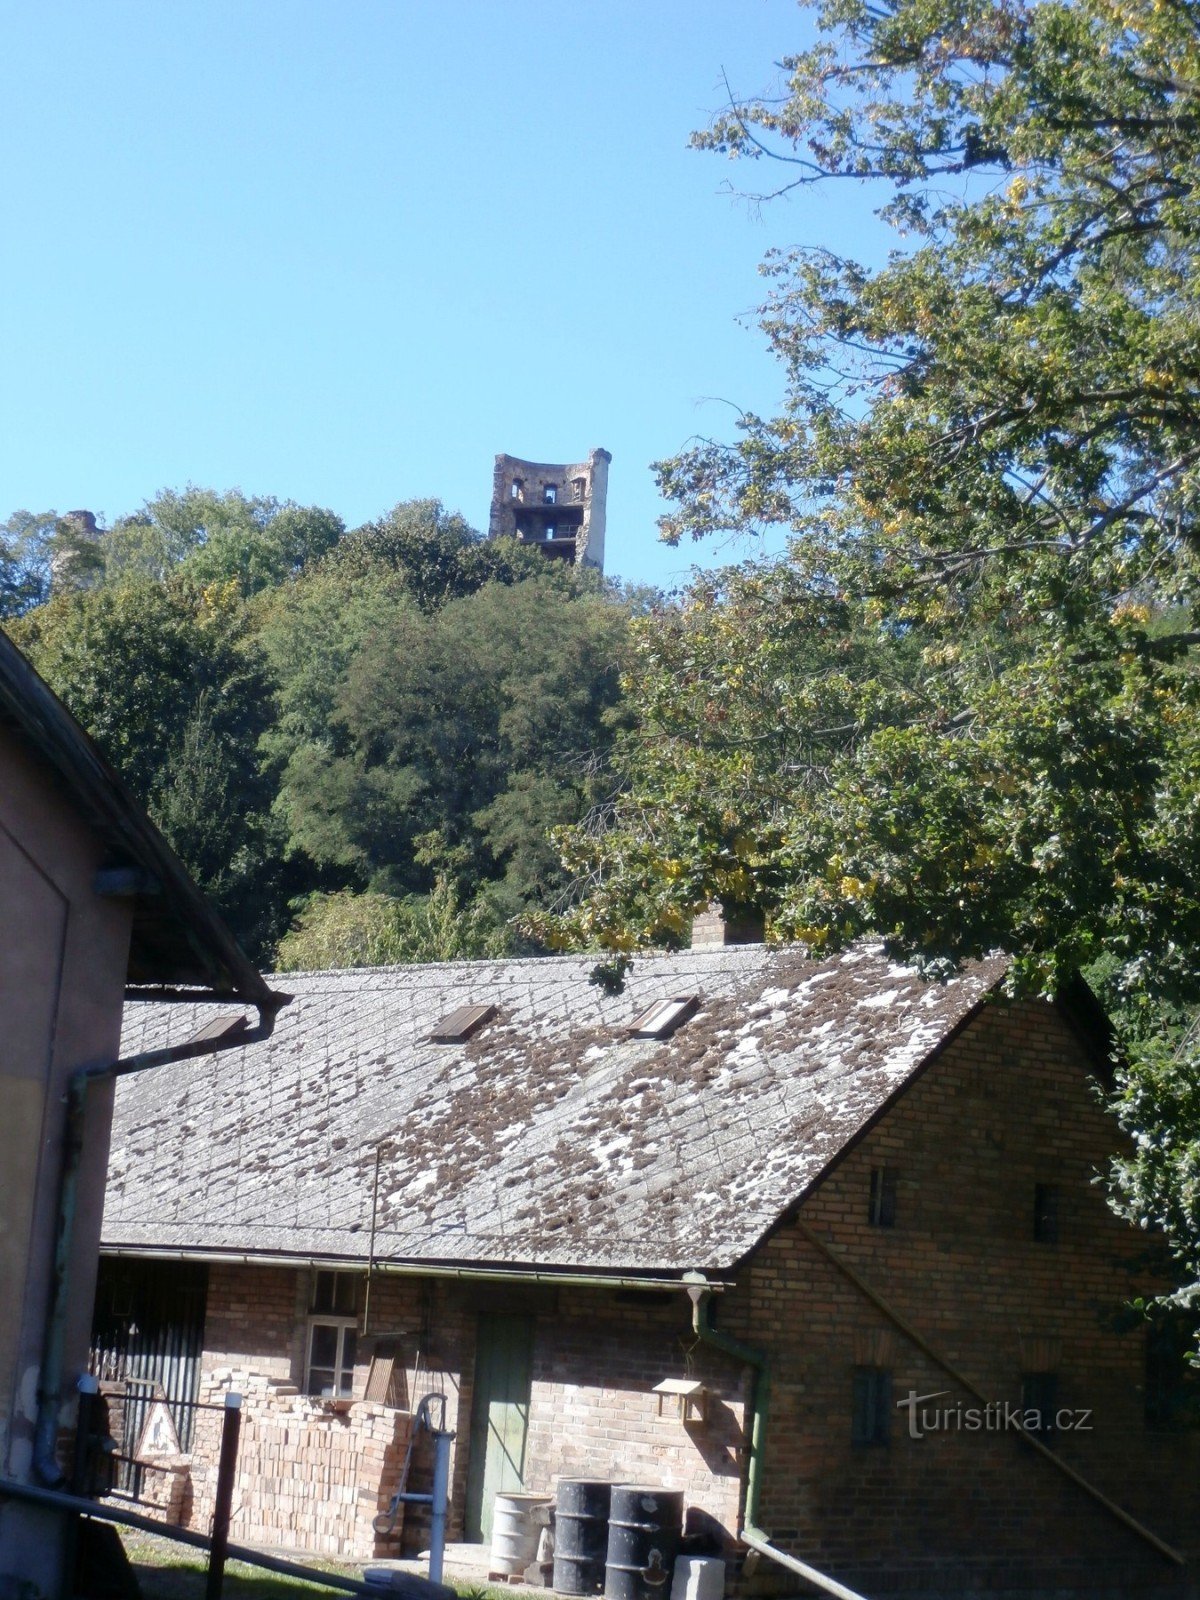 途中、ズヴィレティツェ城の塔が顔をのぞかせます